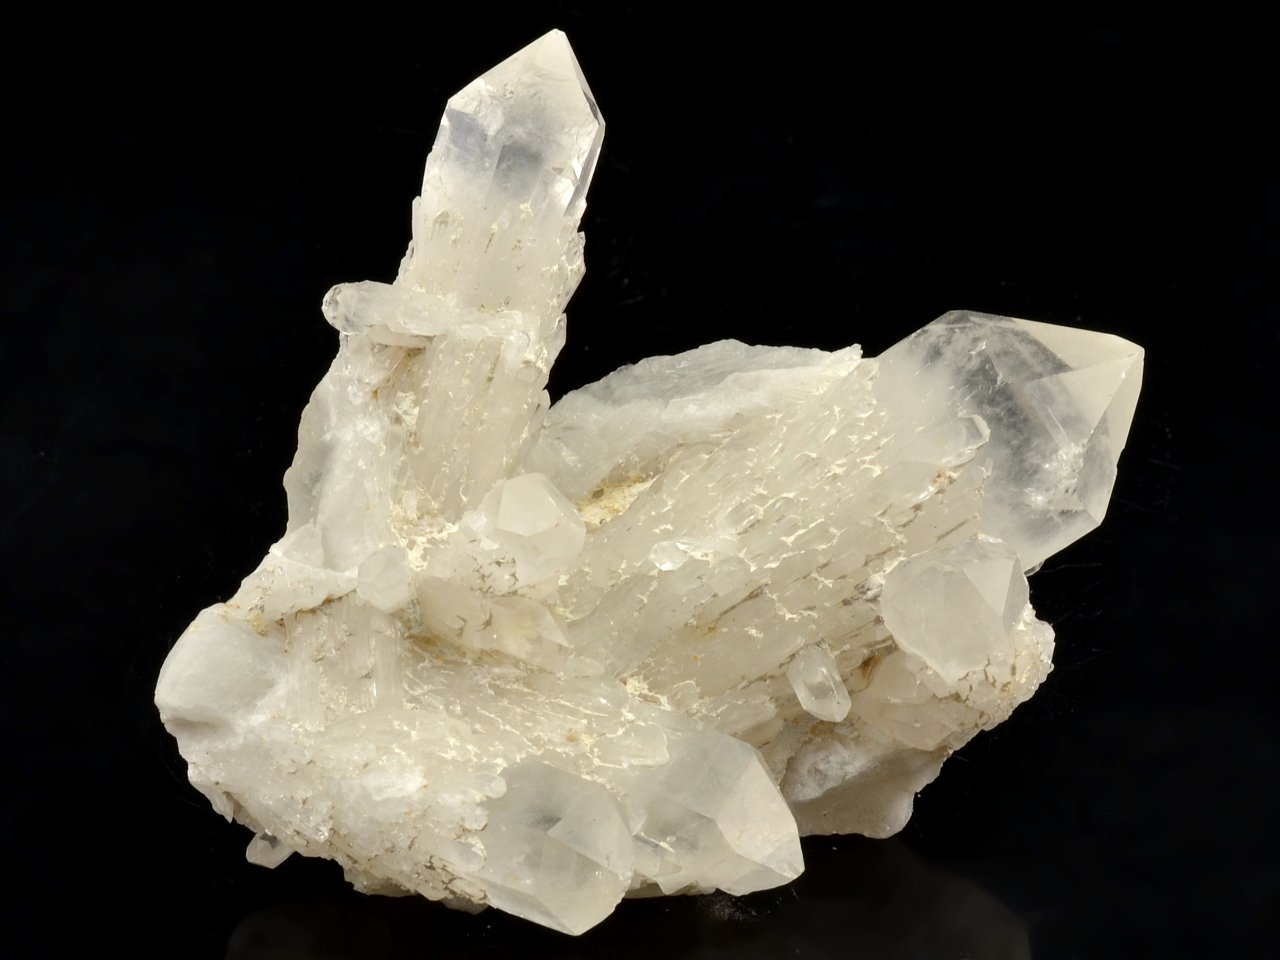 kristal-china-19